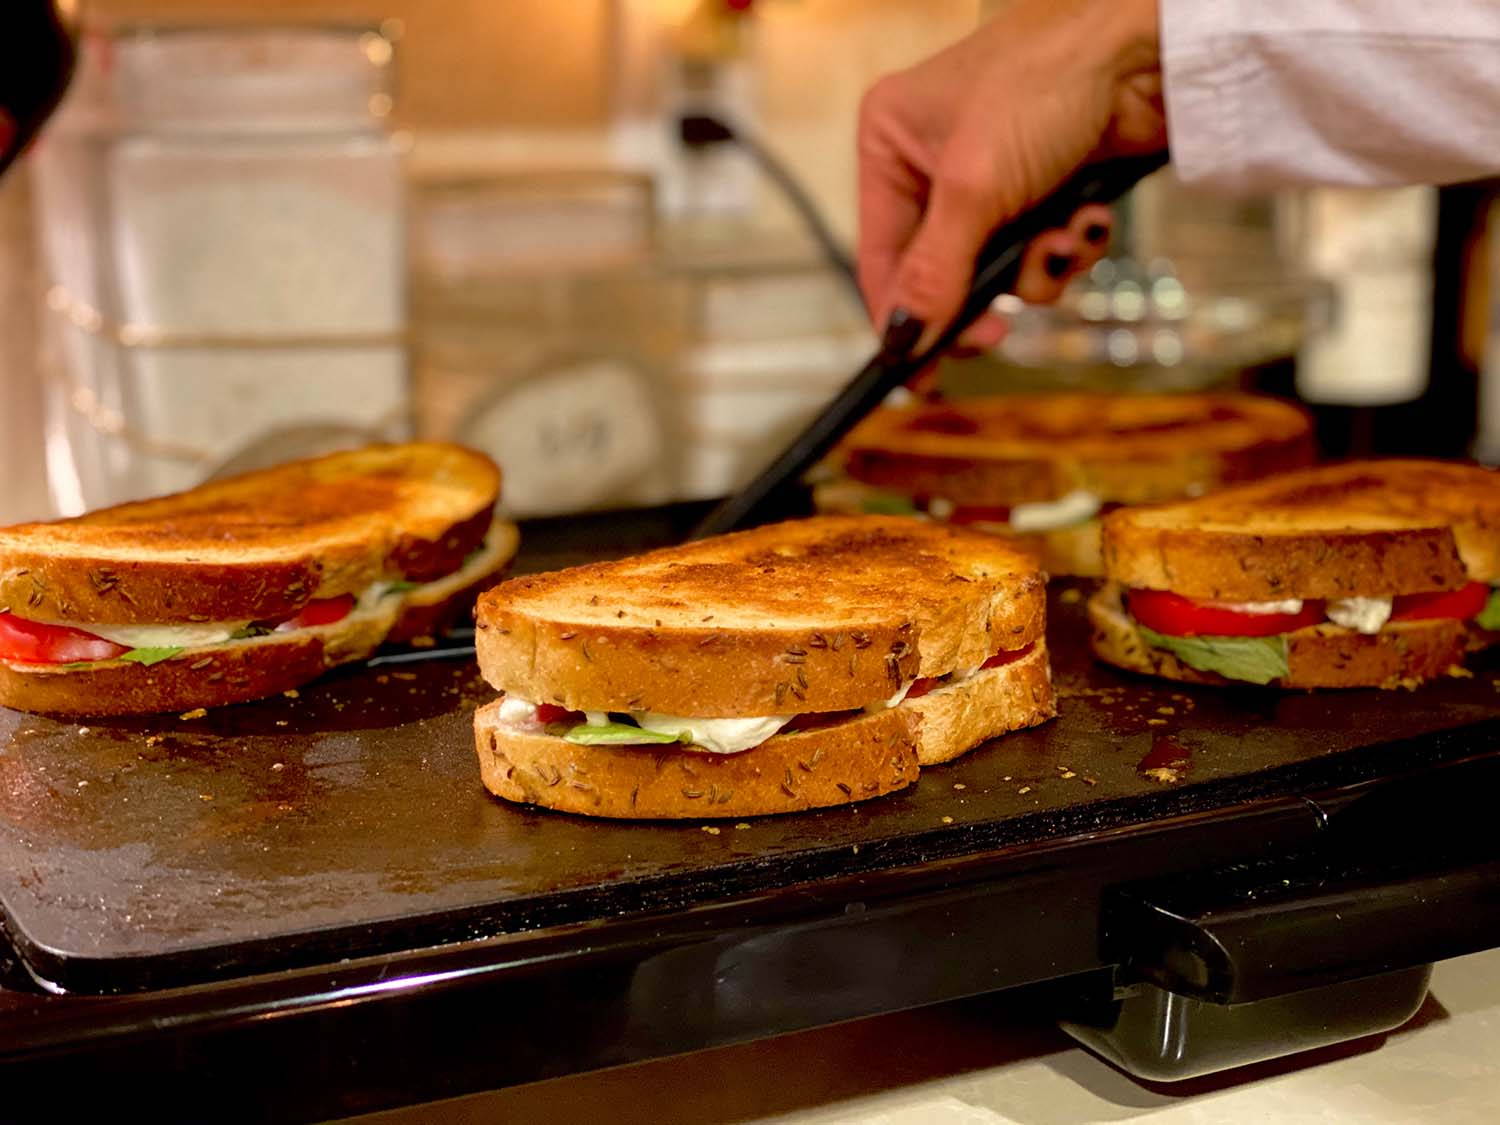 grill-kontaktowy-grillowane-kanapki-panini-panino-tosty-zapiekanki